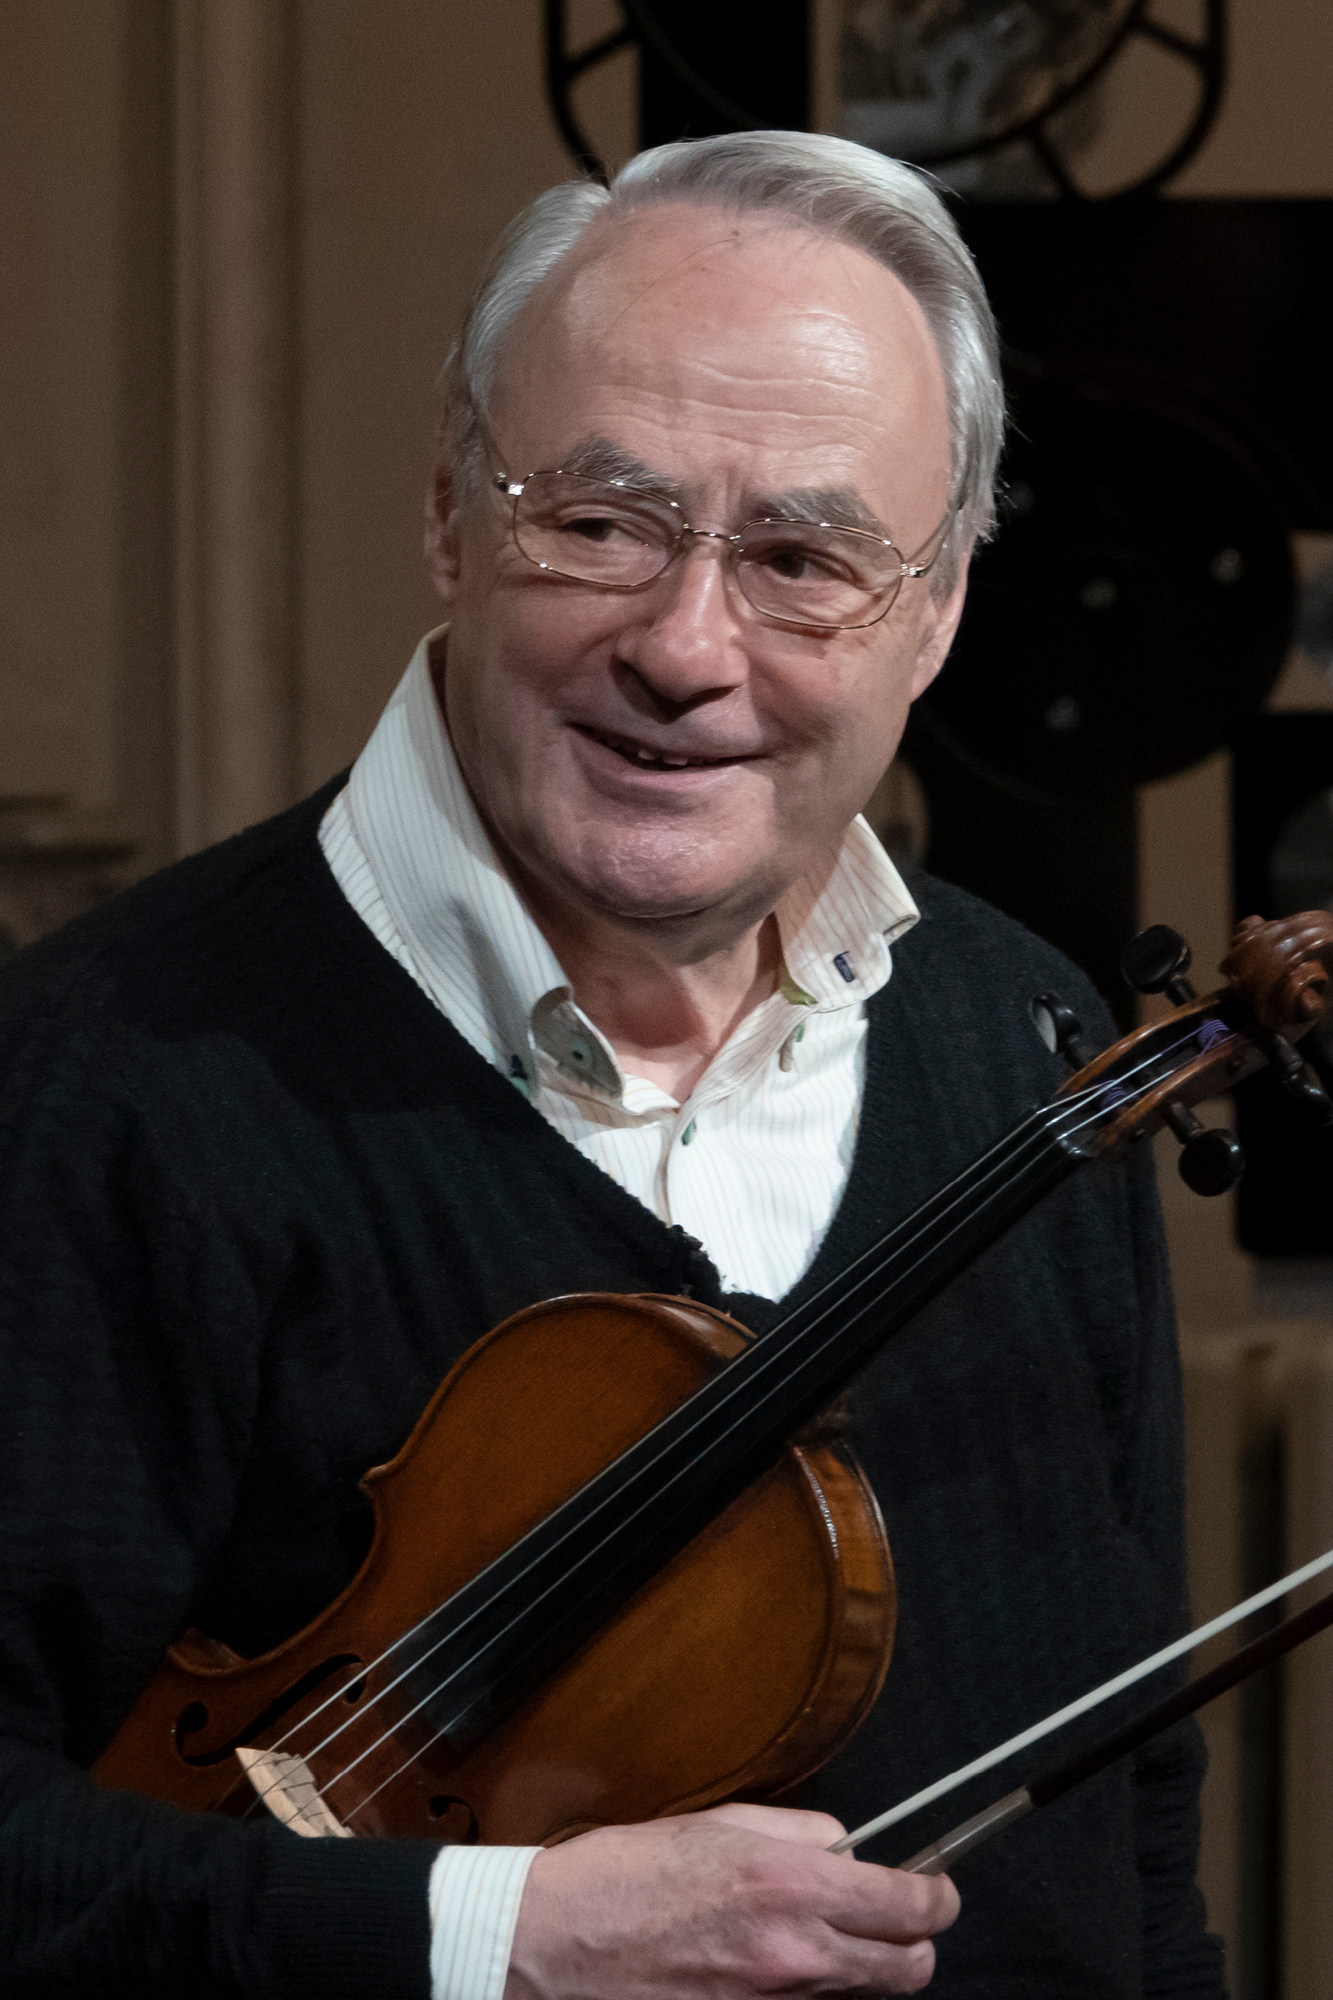 Gérard Poulet, violin masterclasses